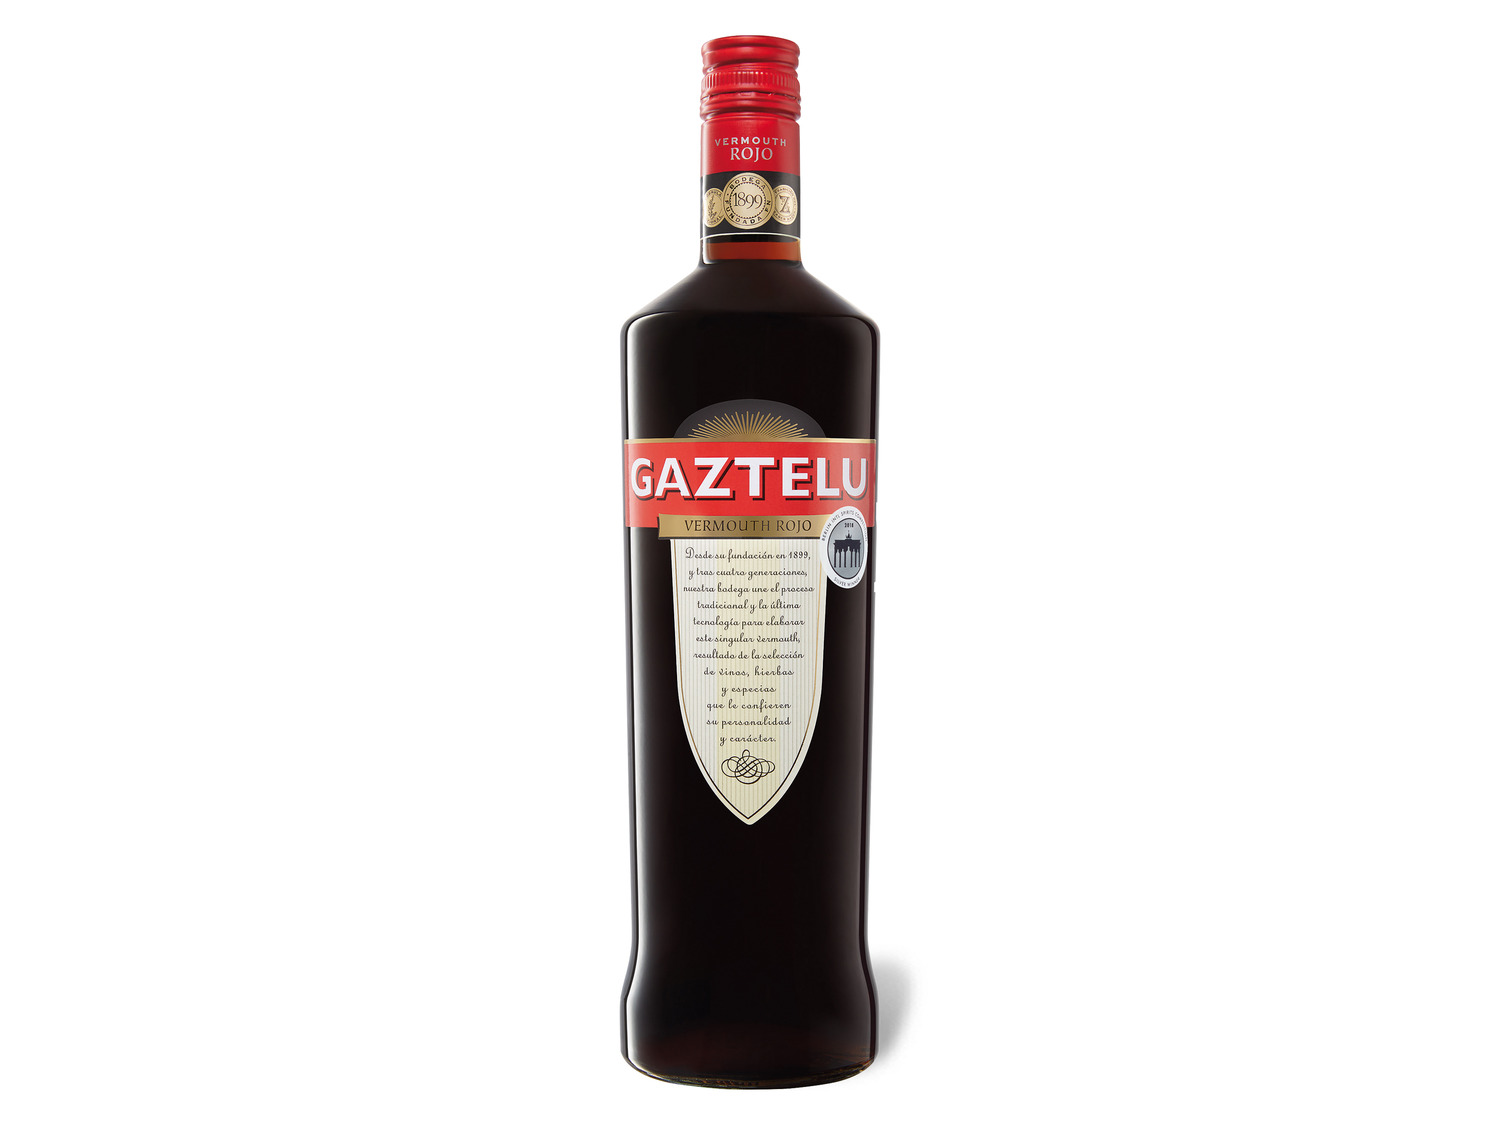 Gaztelu Vermouth Rojo 15% Vol online kaufen | LIDL